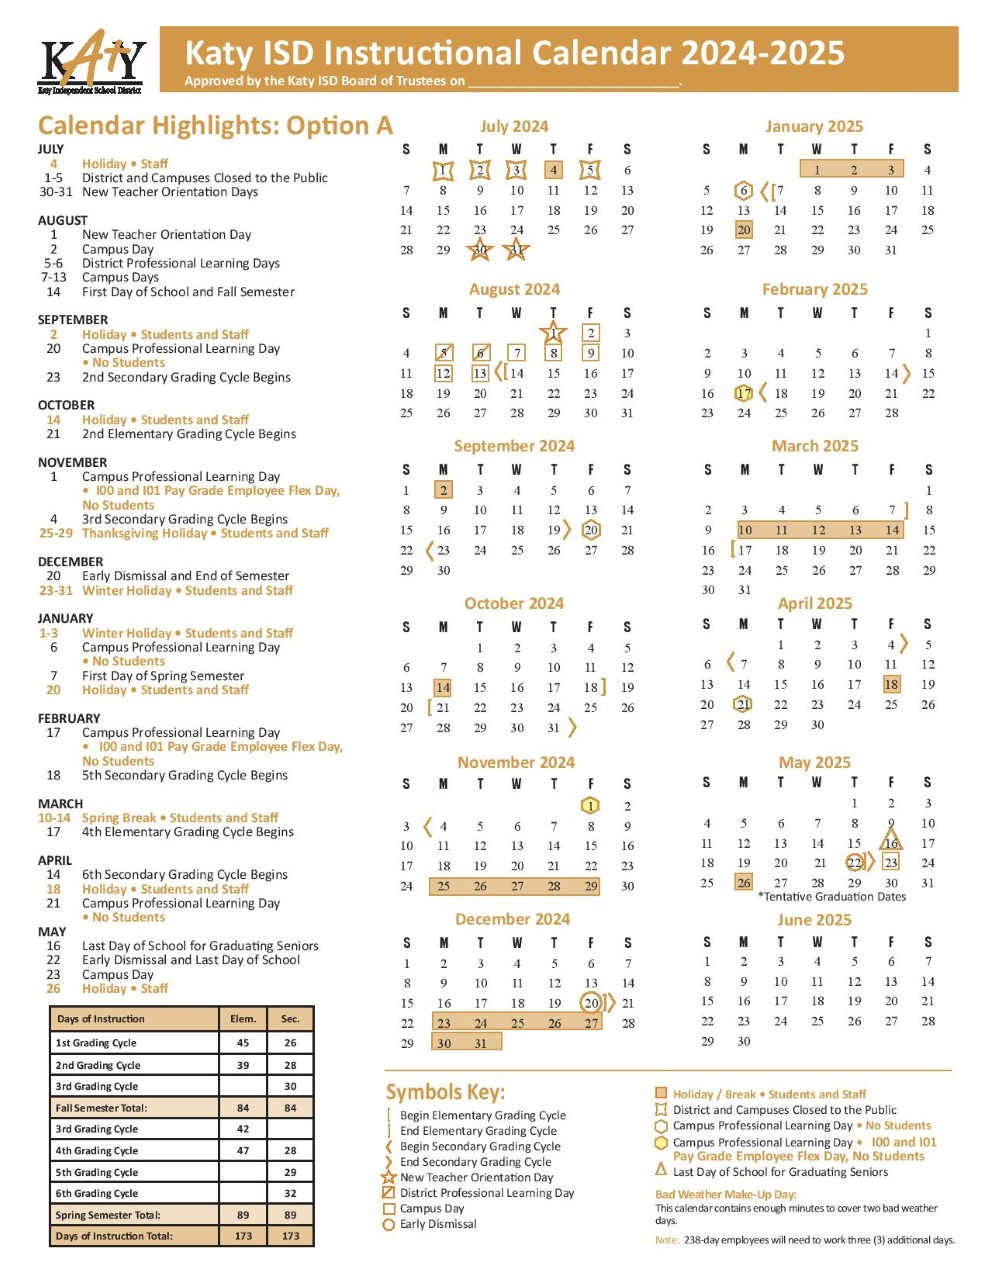 kisd-calendar-2024-2025-jan-2024-calendar